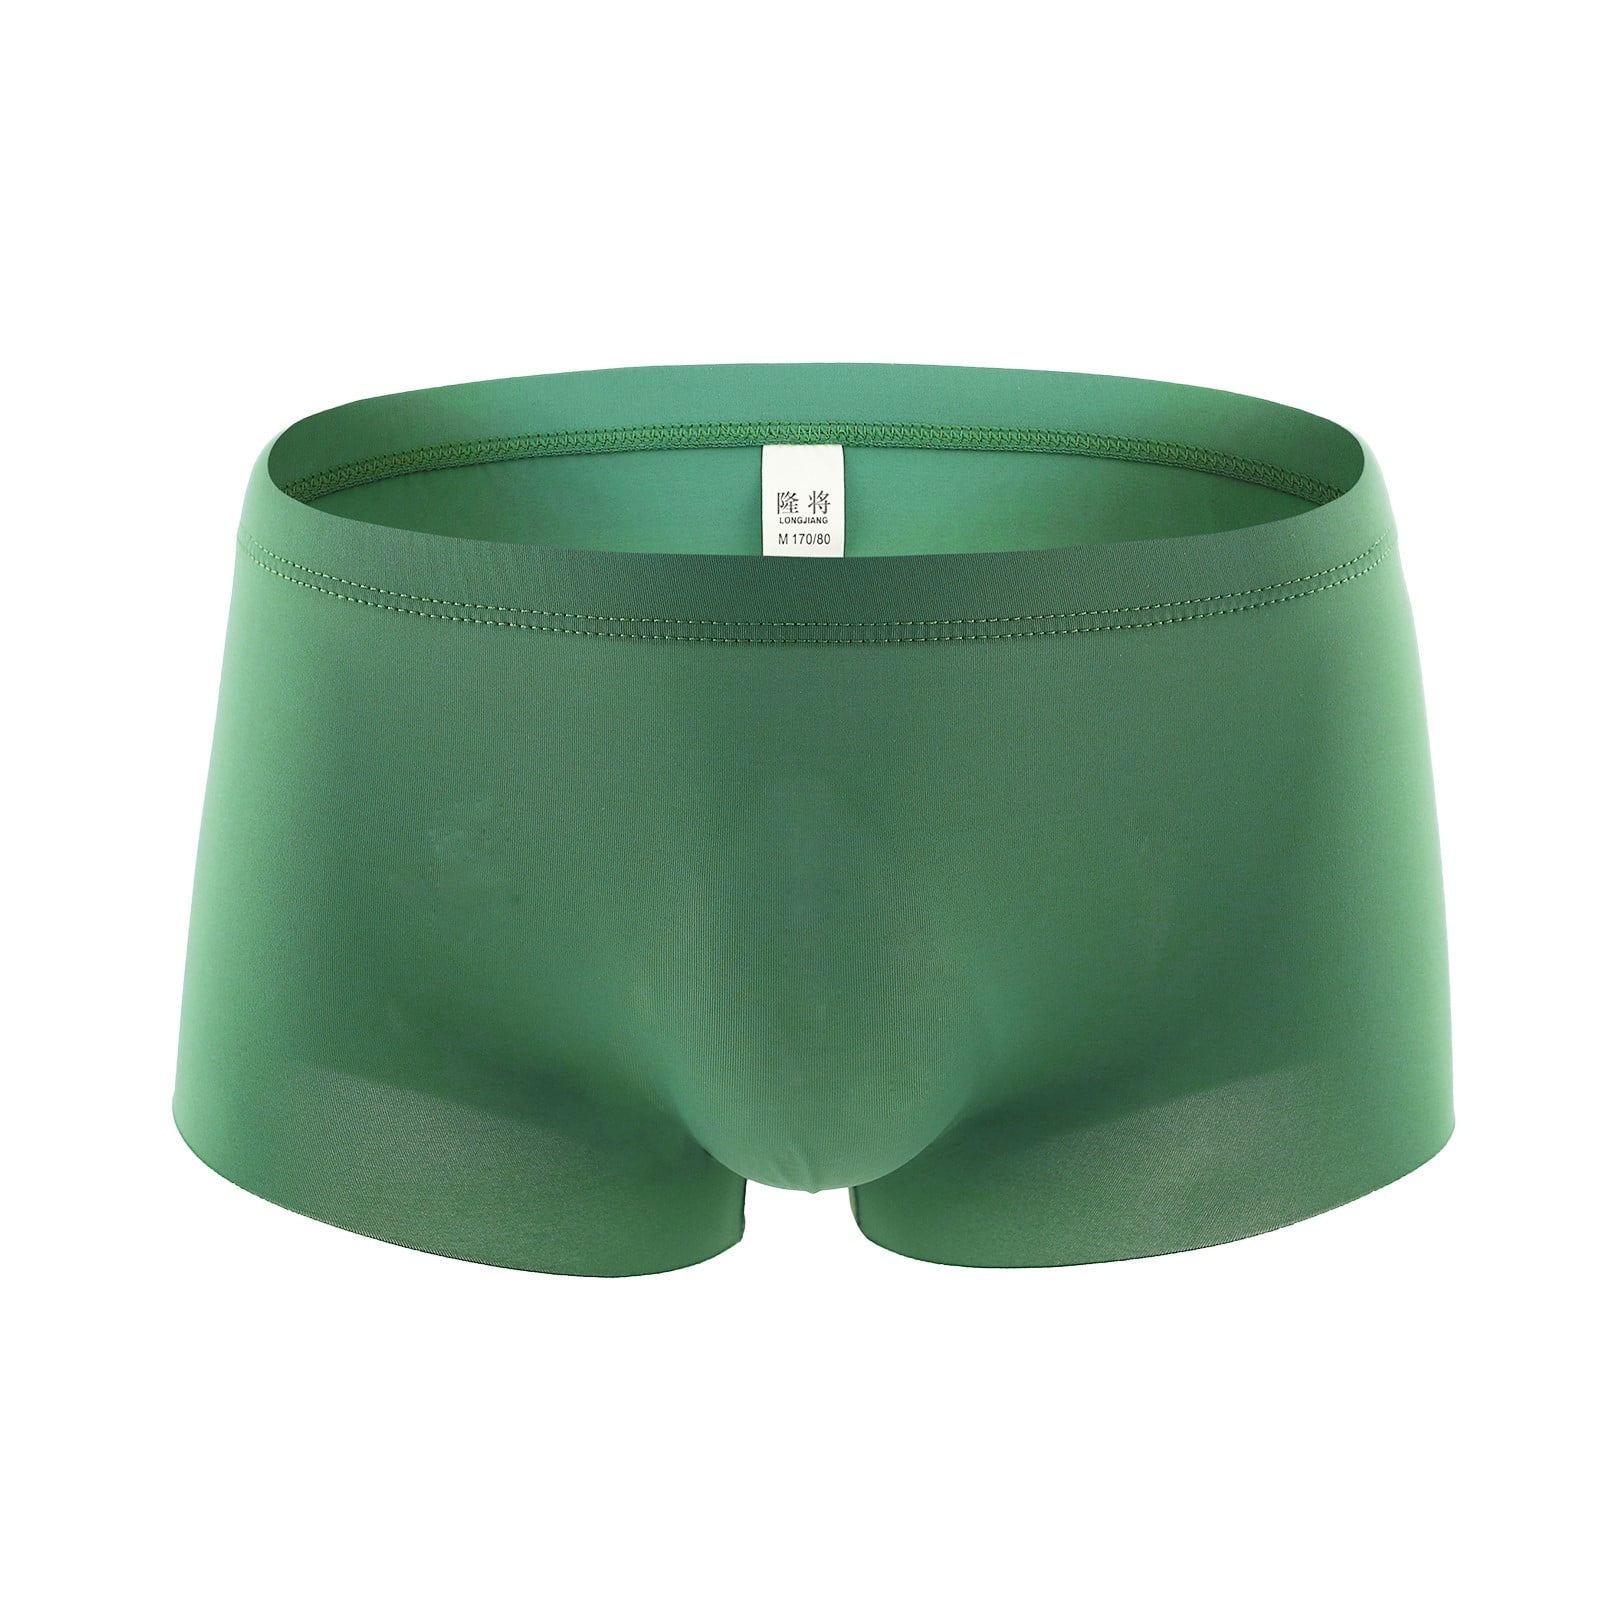 LEEy-world Mens Underwear Men's Underwear Boxer Briefs Pack, Cotton  ComfortSoft Boxer Brief for Men, Moisture-Wicking Breathable Army Green,S